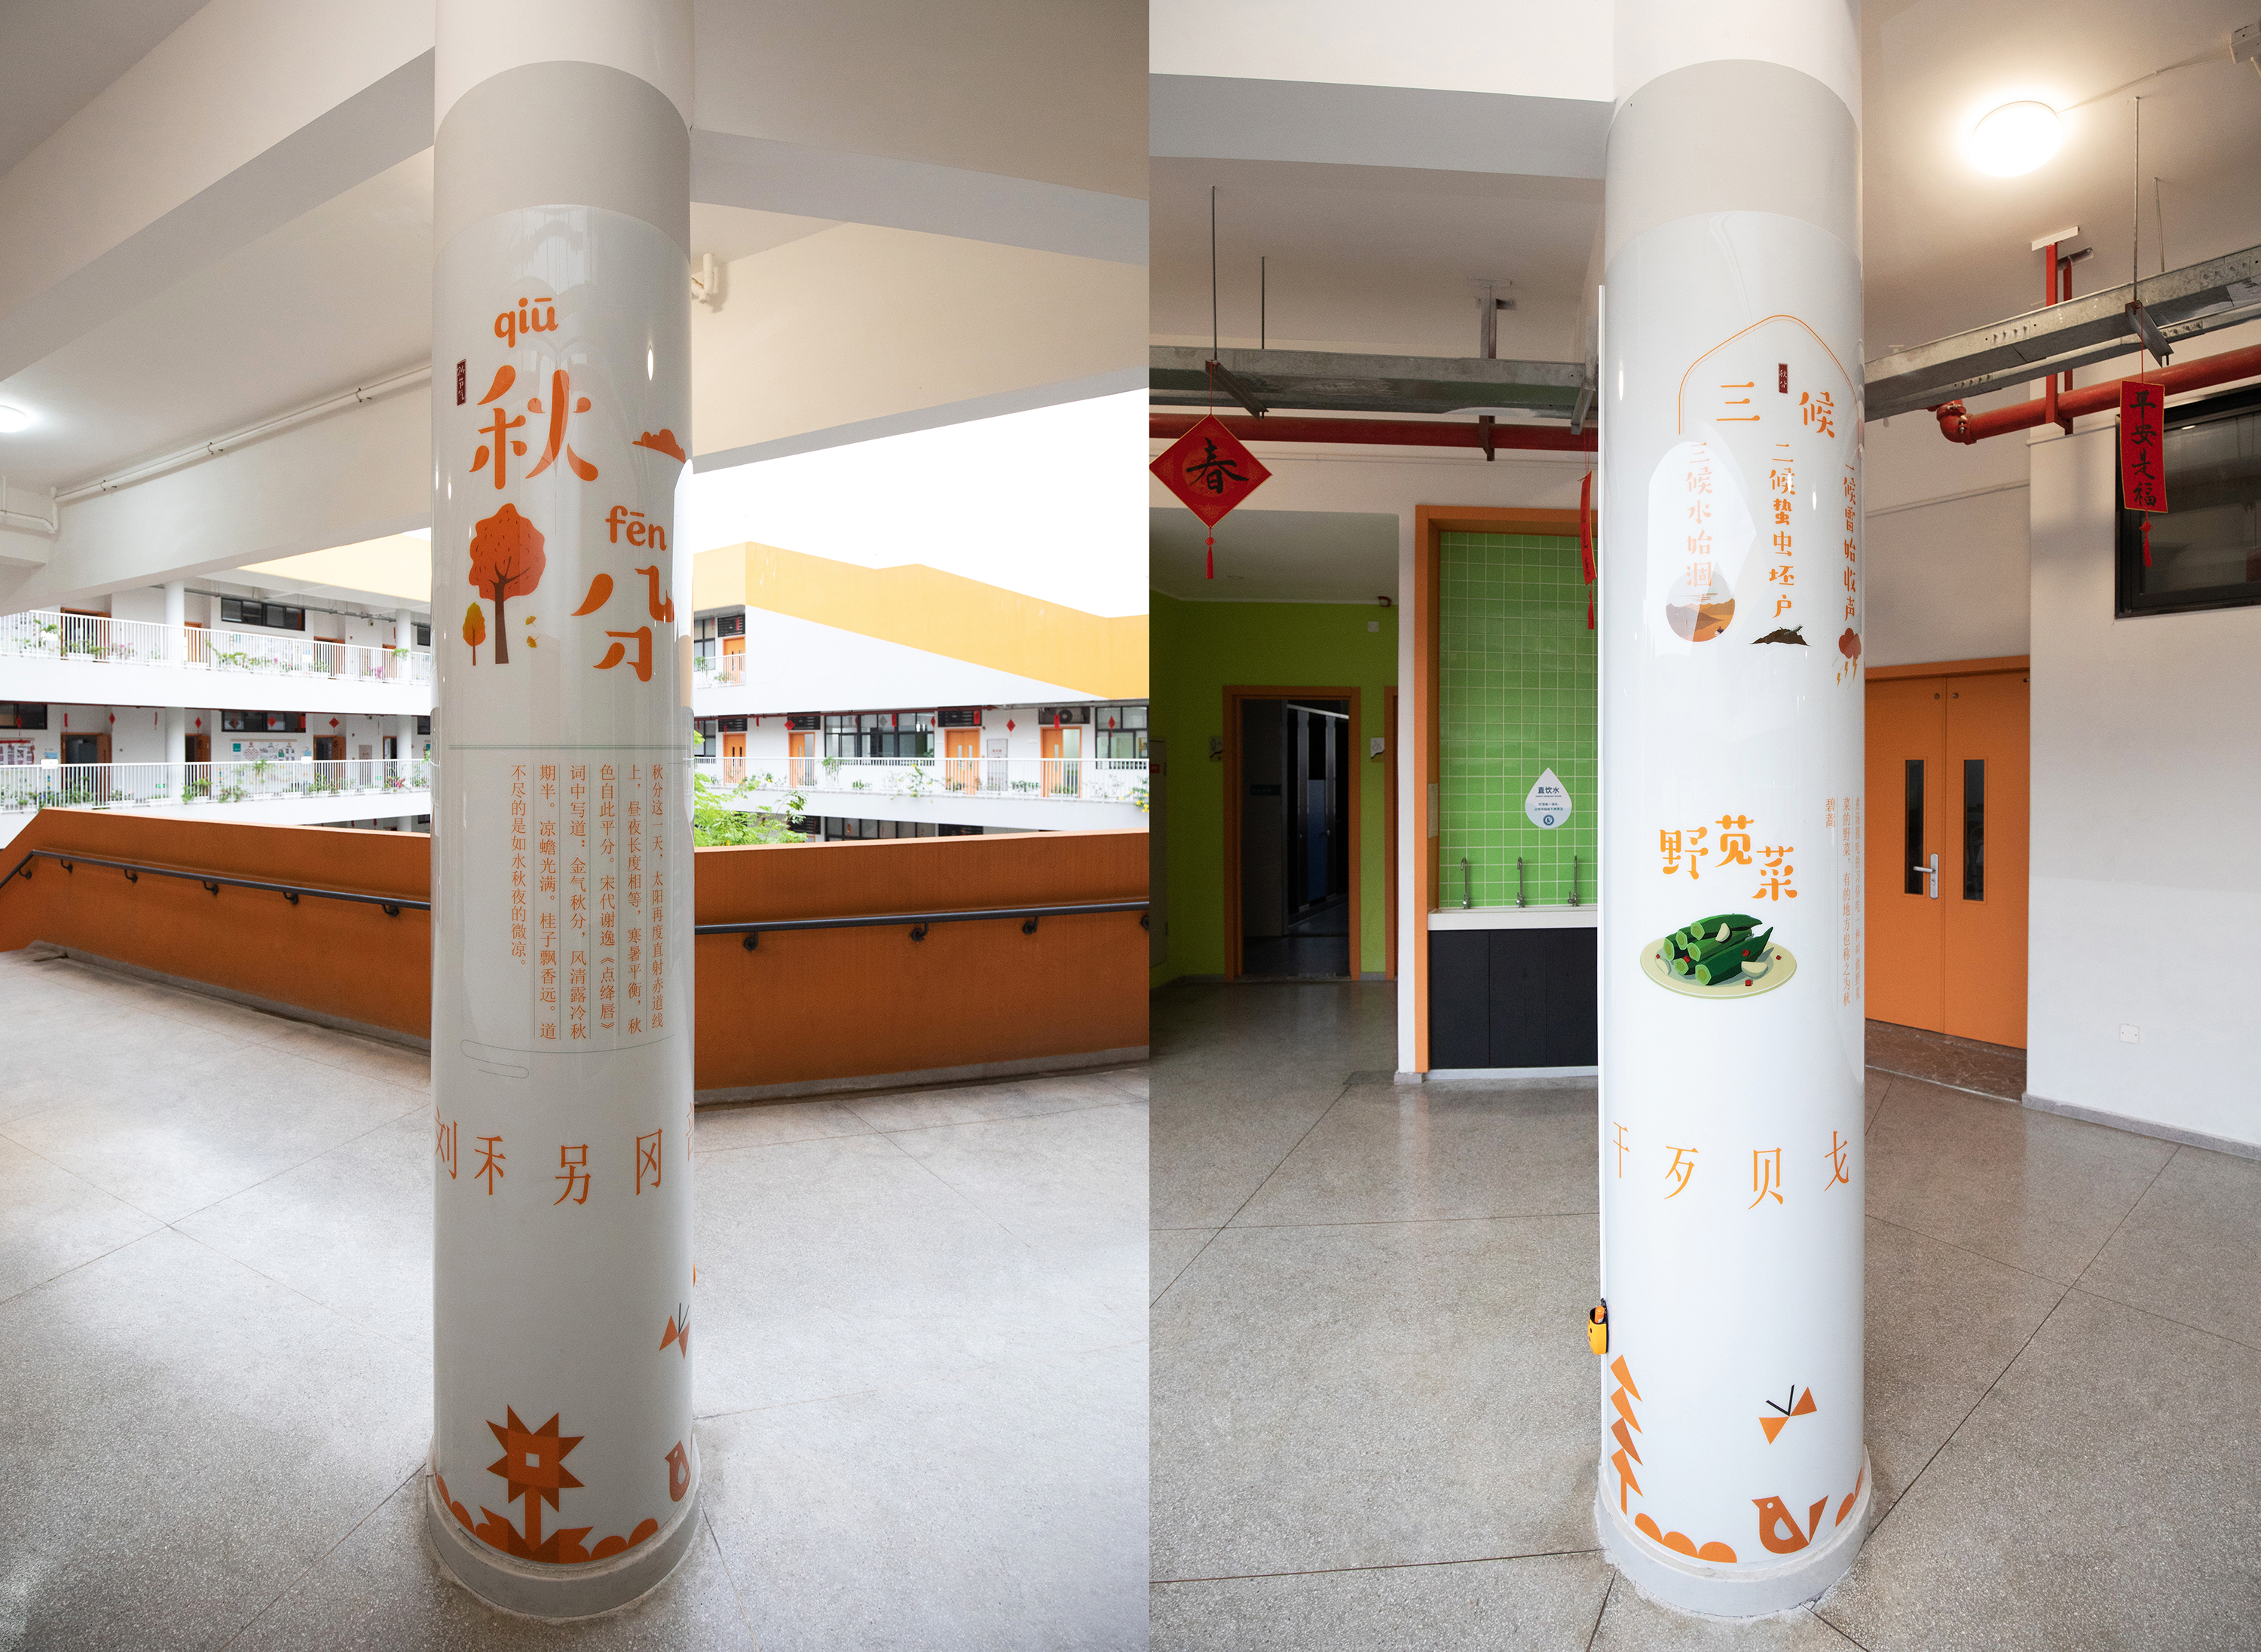 校园文化柱子设计图片